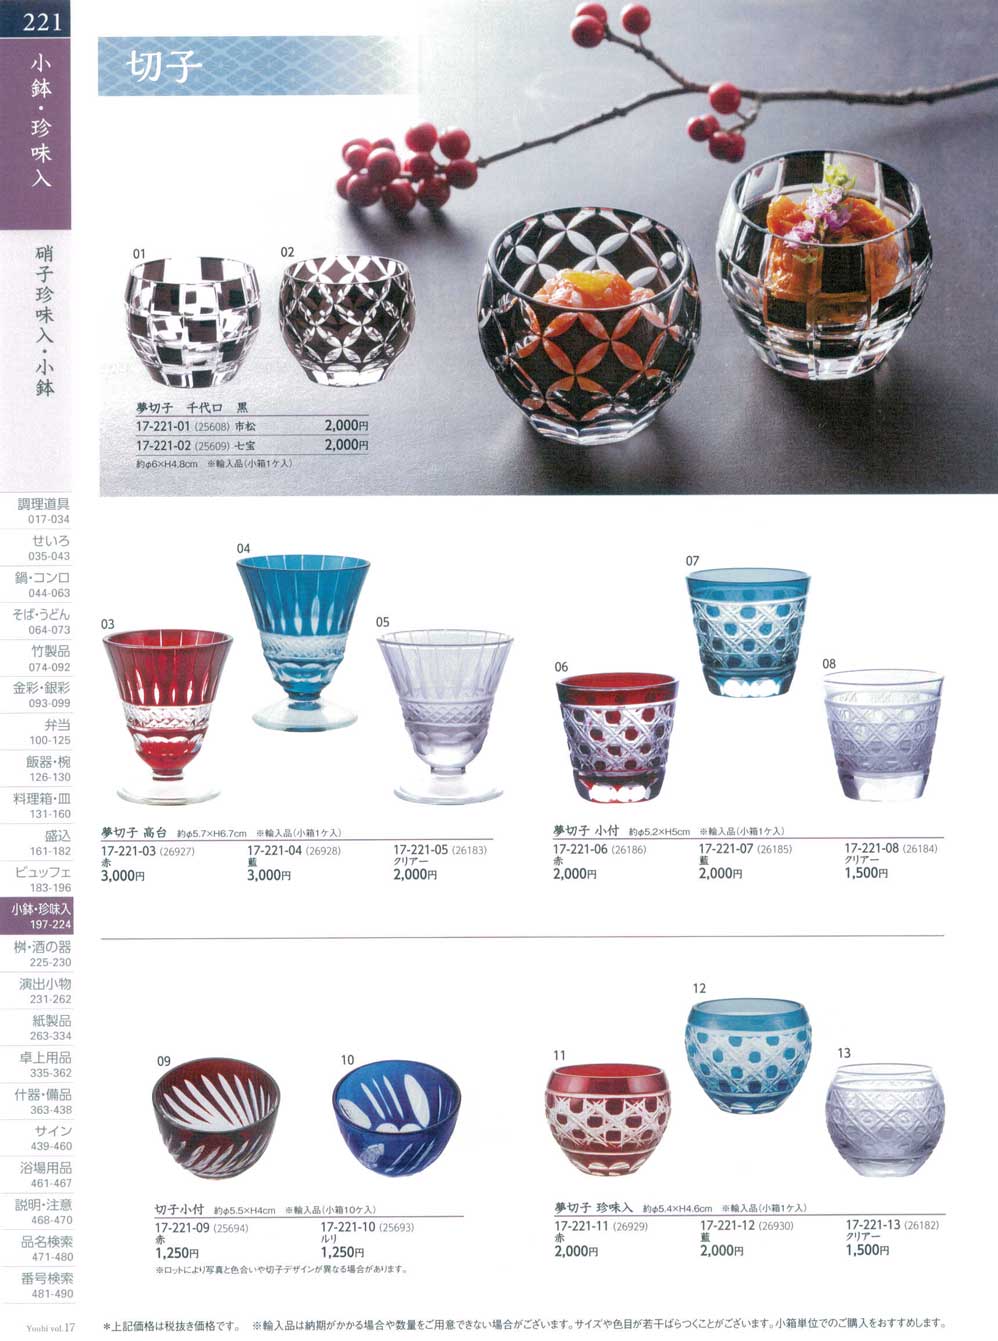 食器 硝子珍味入・小鉢・切子Small Bowl made of Glass/Kiriko 用美１７－221ページ